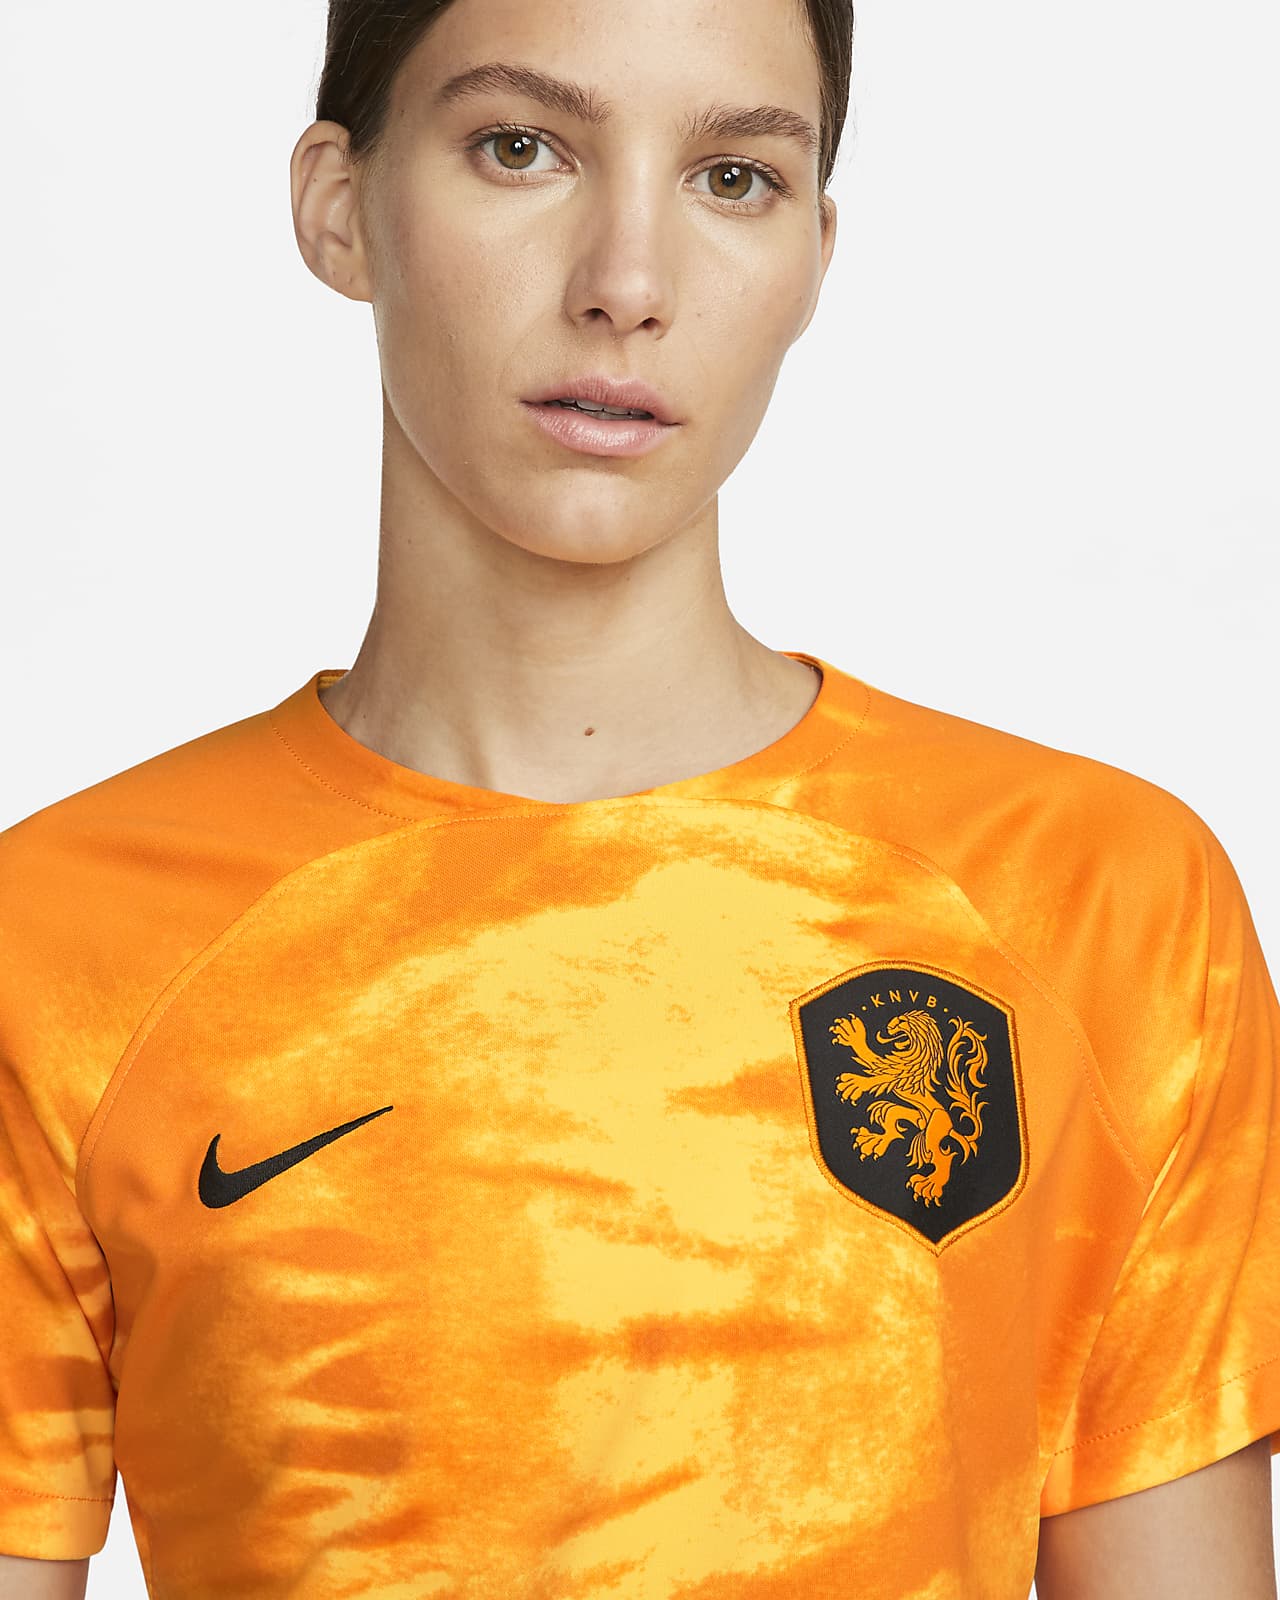 Groet Blijkbaar De waarheid vertellen Nederland 2022/23 Stadium Thuis Nike Dri-FIT voetbalshirt voor dames. Nike  BE